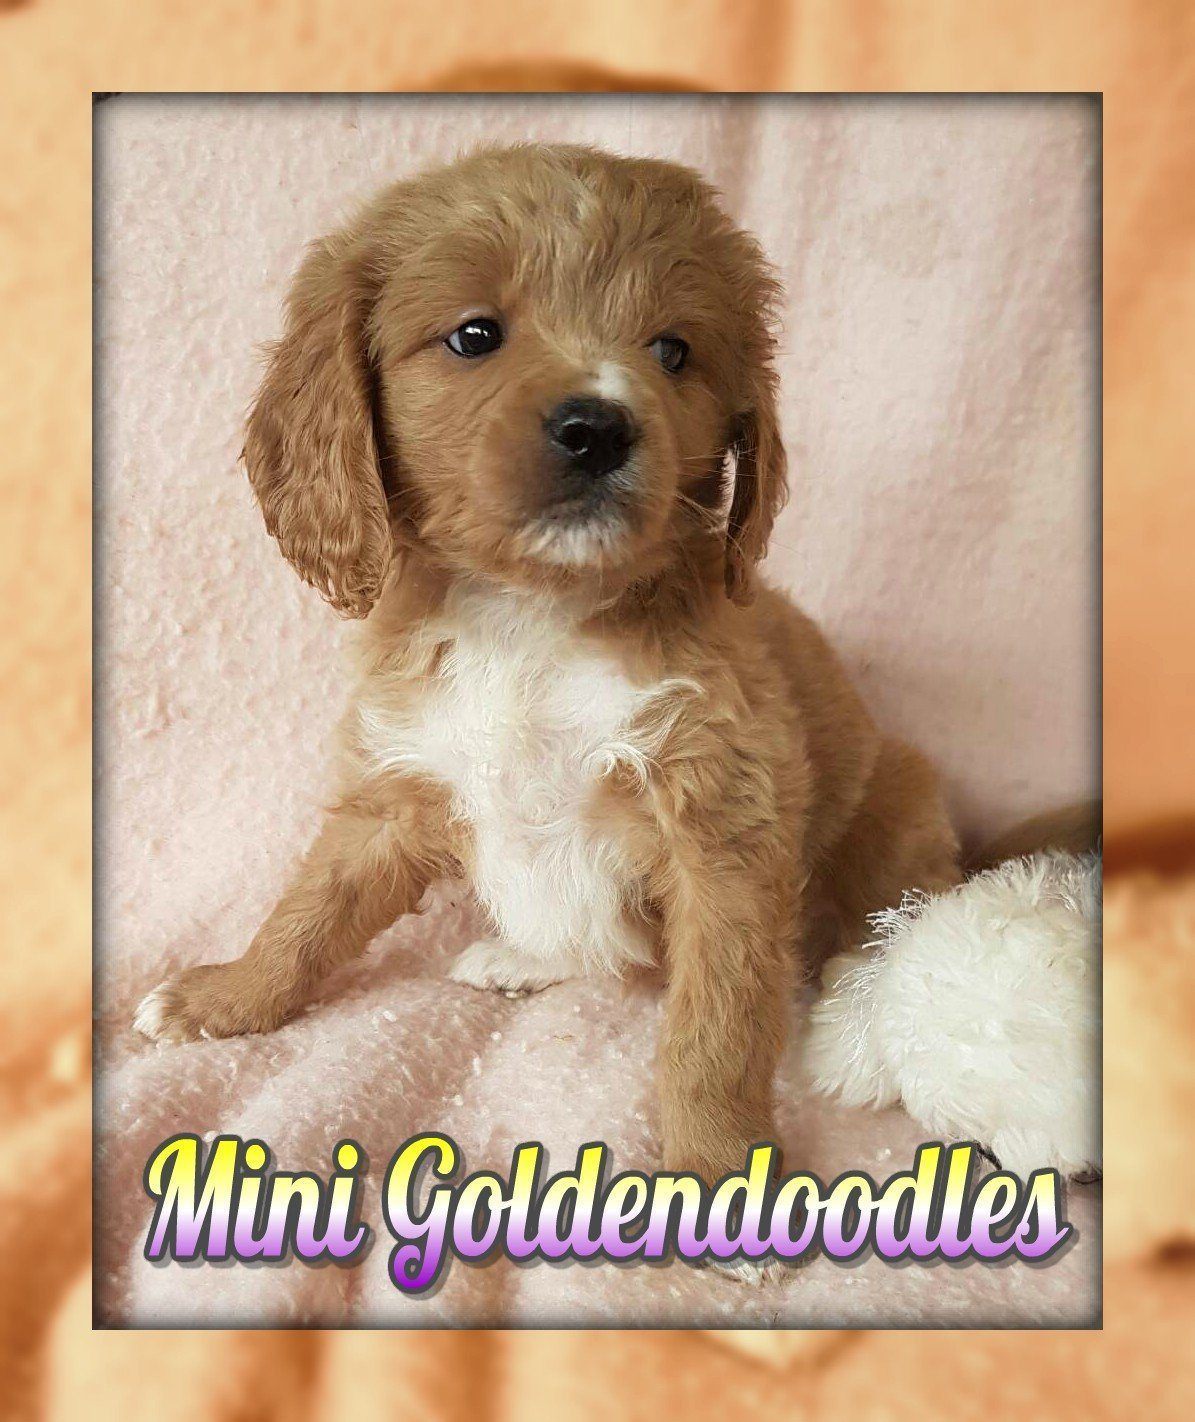 Mini Goldendoodle